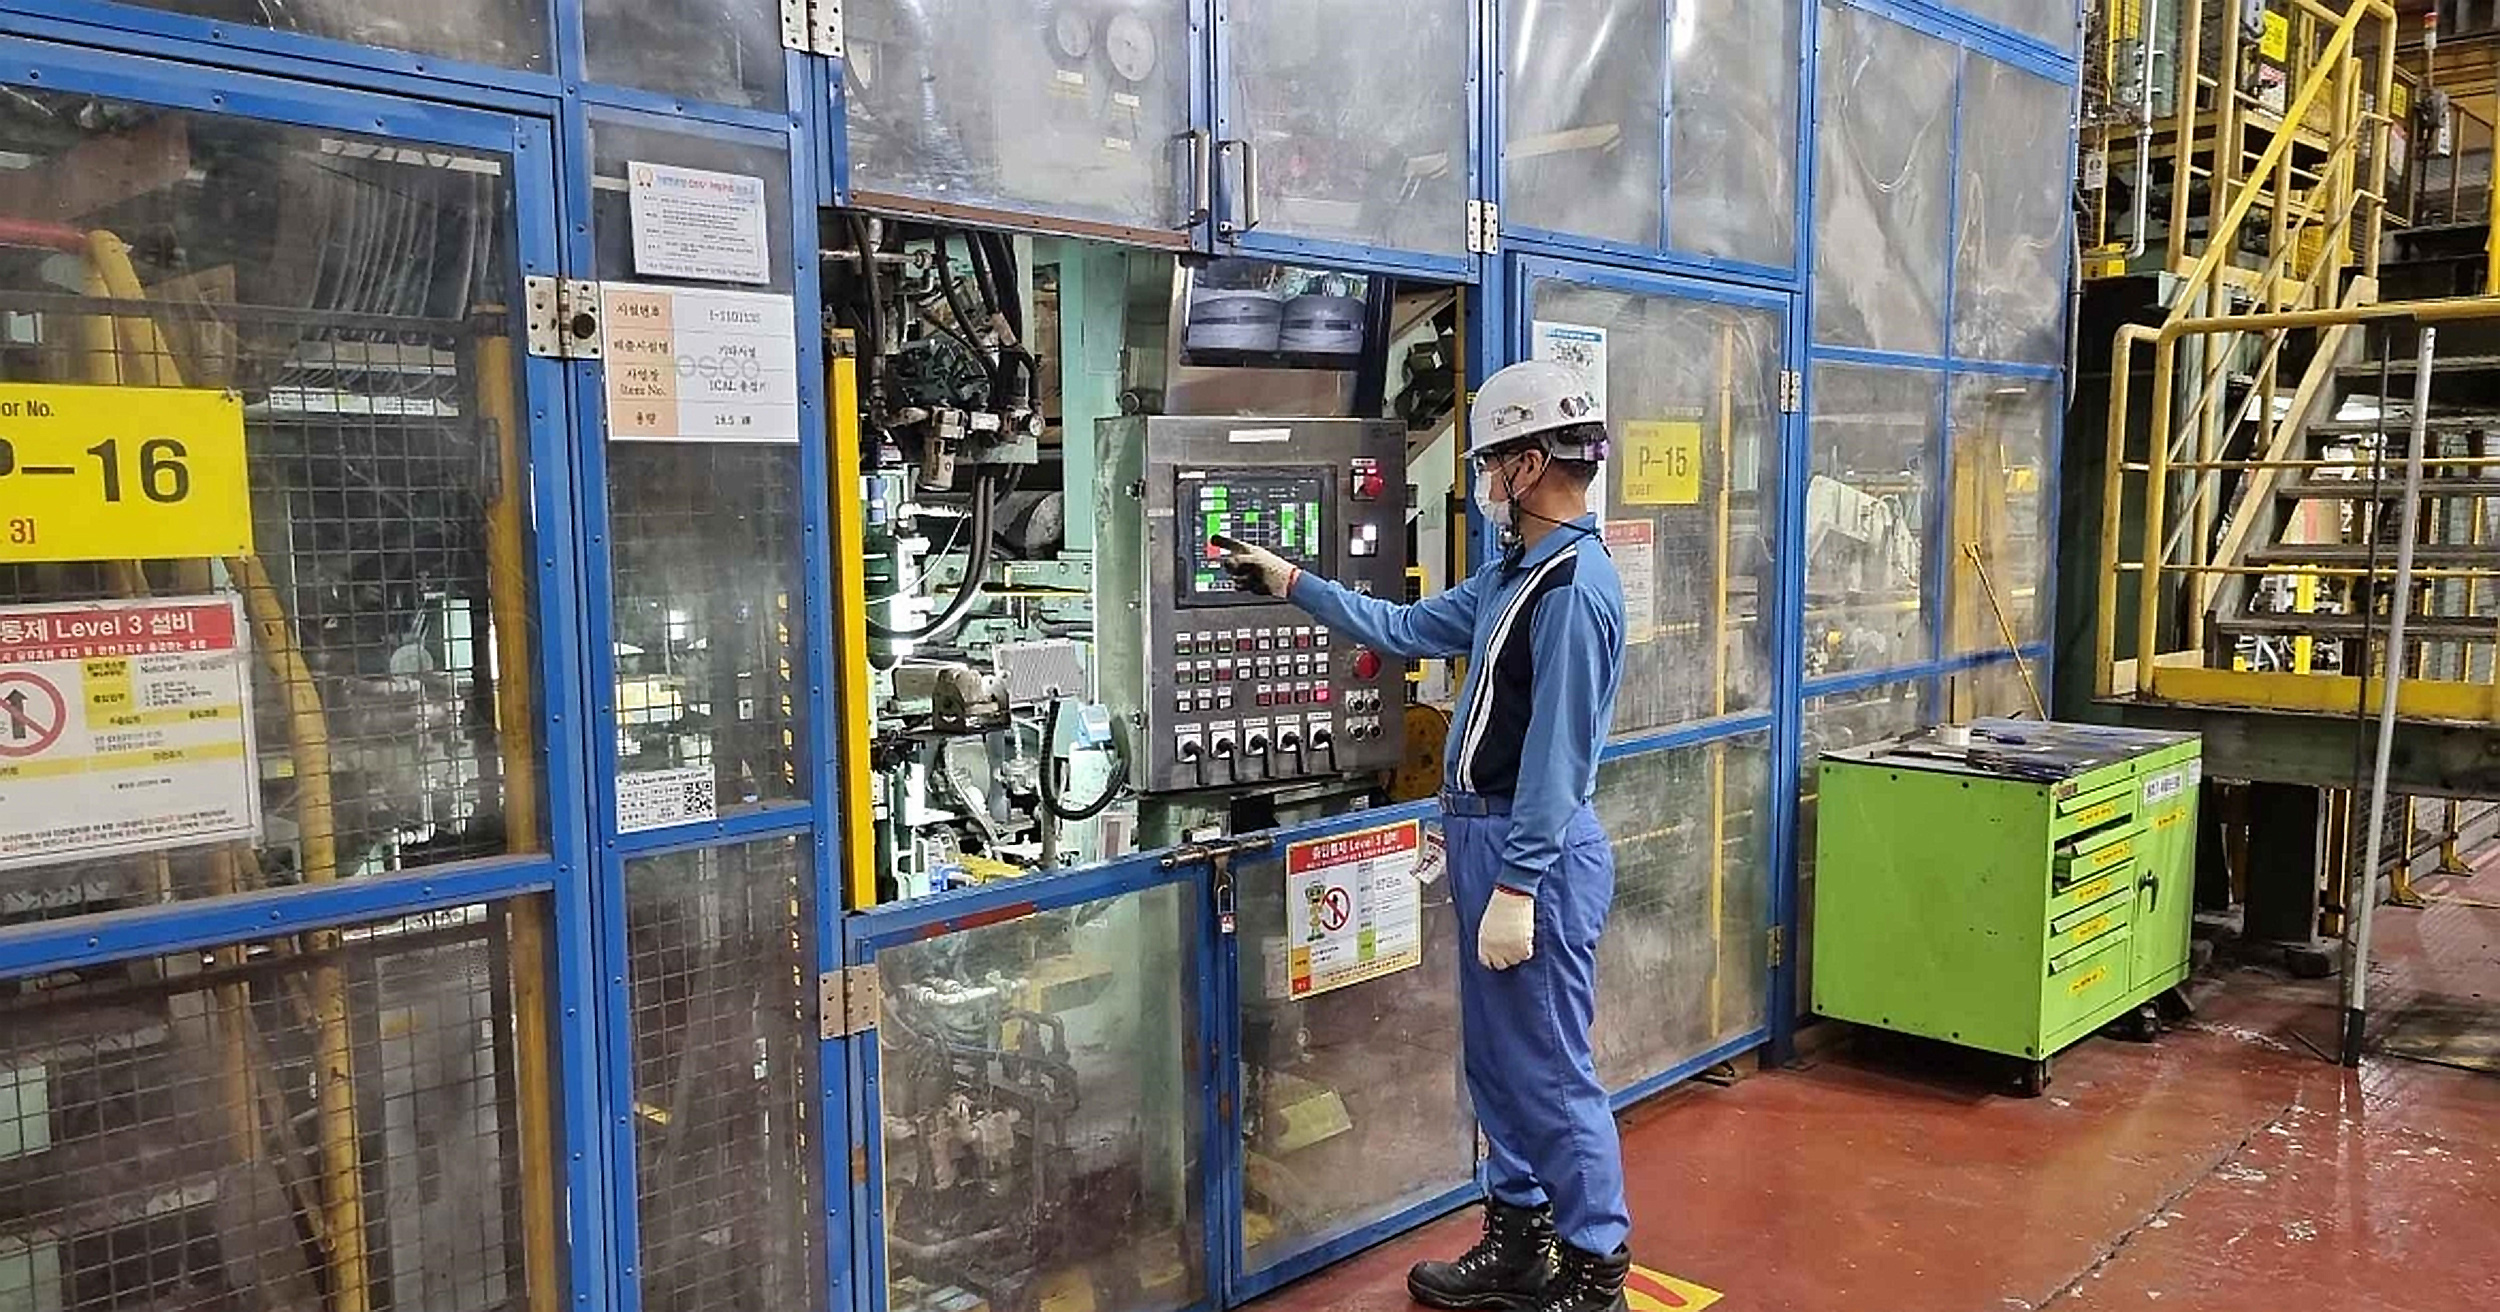 1냉연공장 직원이 포스코 파란색 작업복과 하얀색 작업모를 쓰고 설비 및 안전을 점검하고 있다.